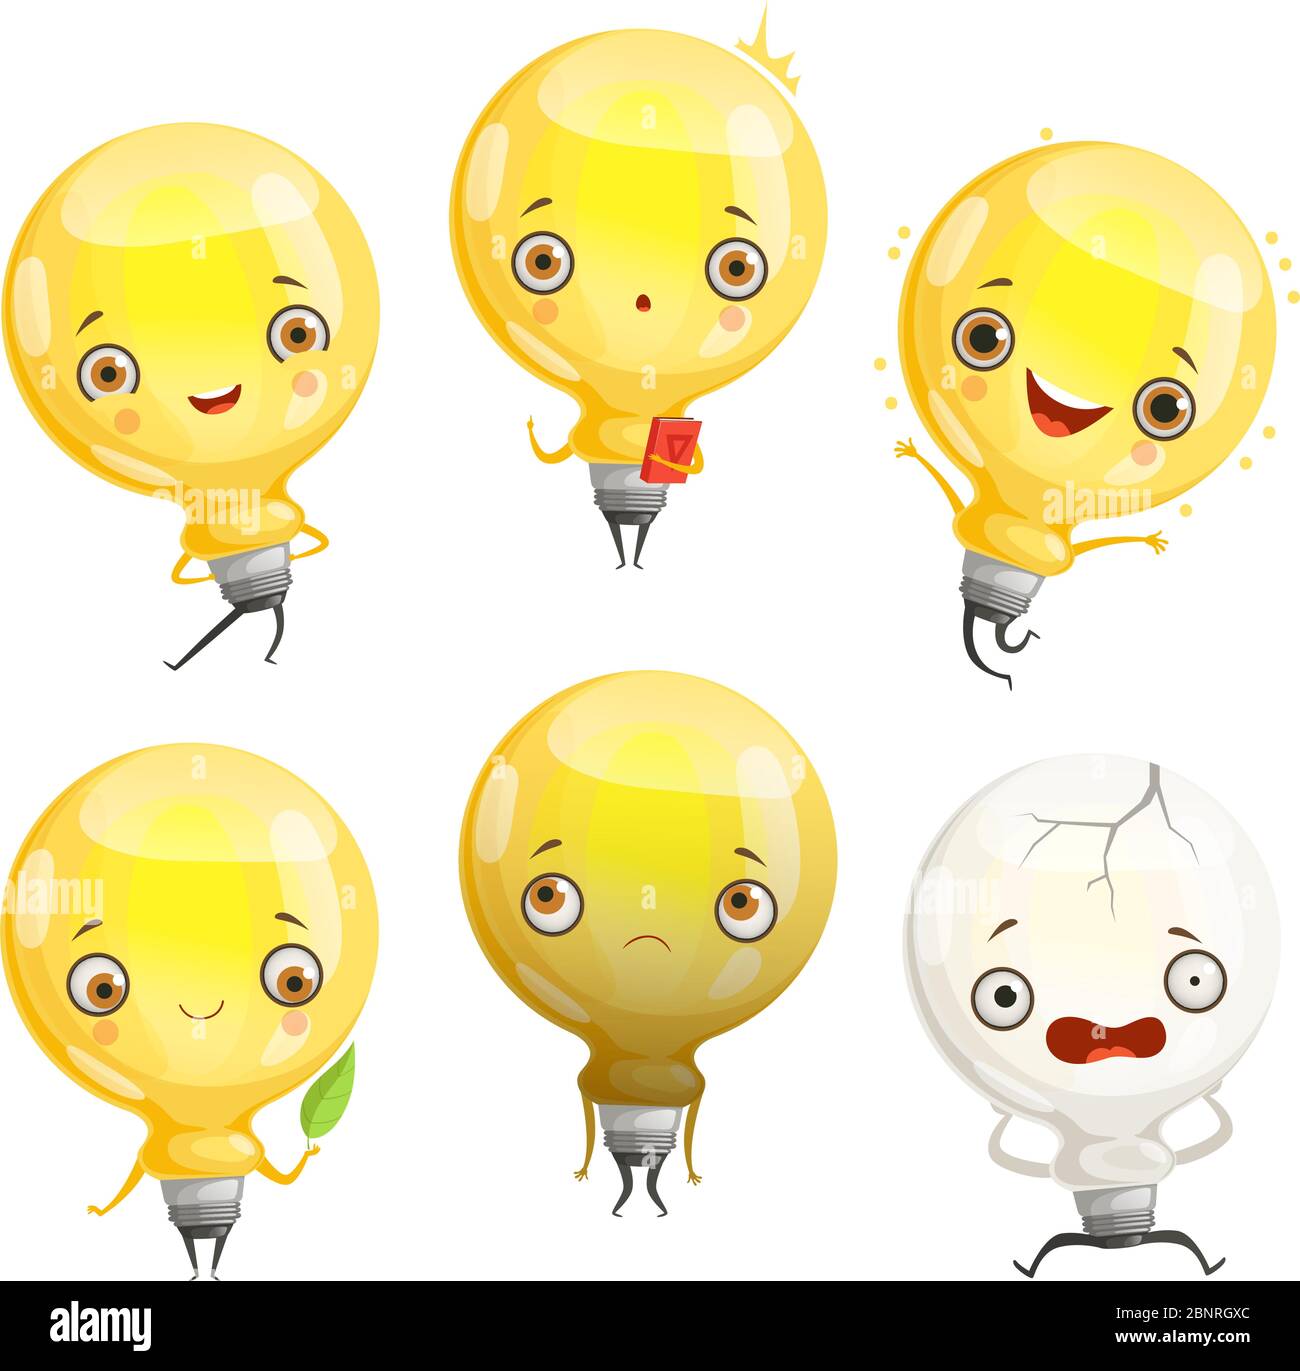 Caractères bulbes. Lampe de dessin animé mascotte dans les poses dynamiques et amusant émotions image vecteur Illustration de Vecteur